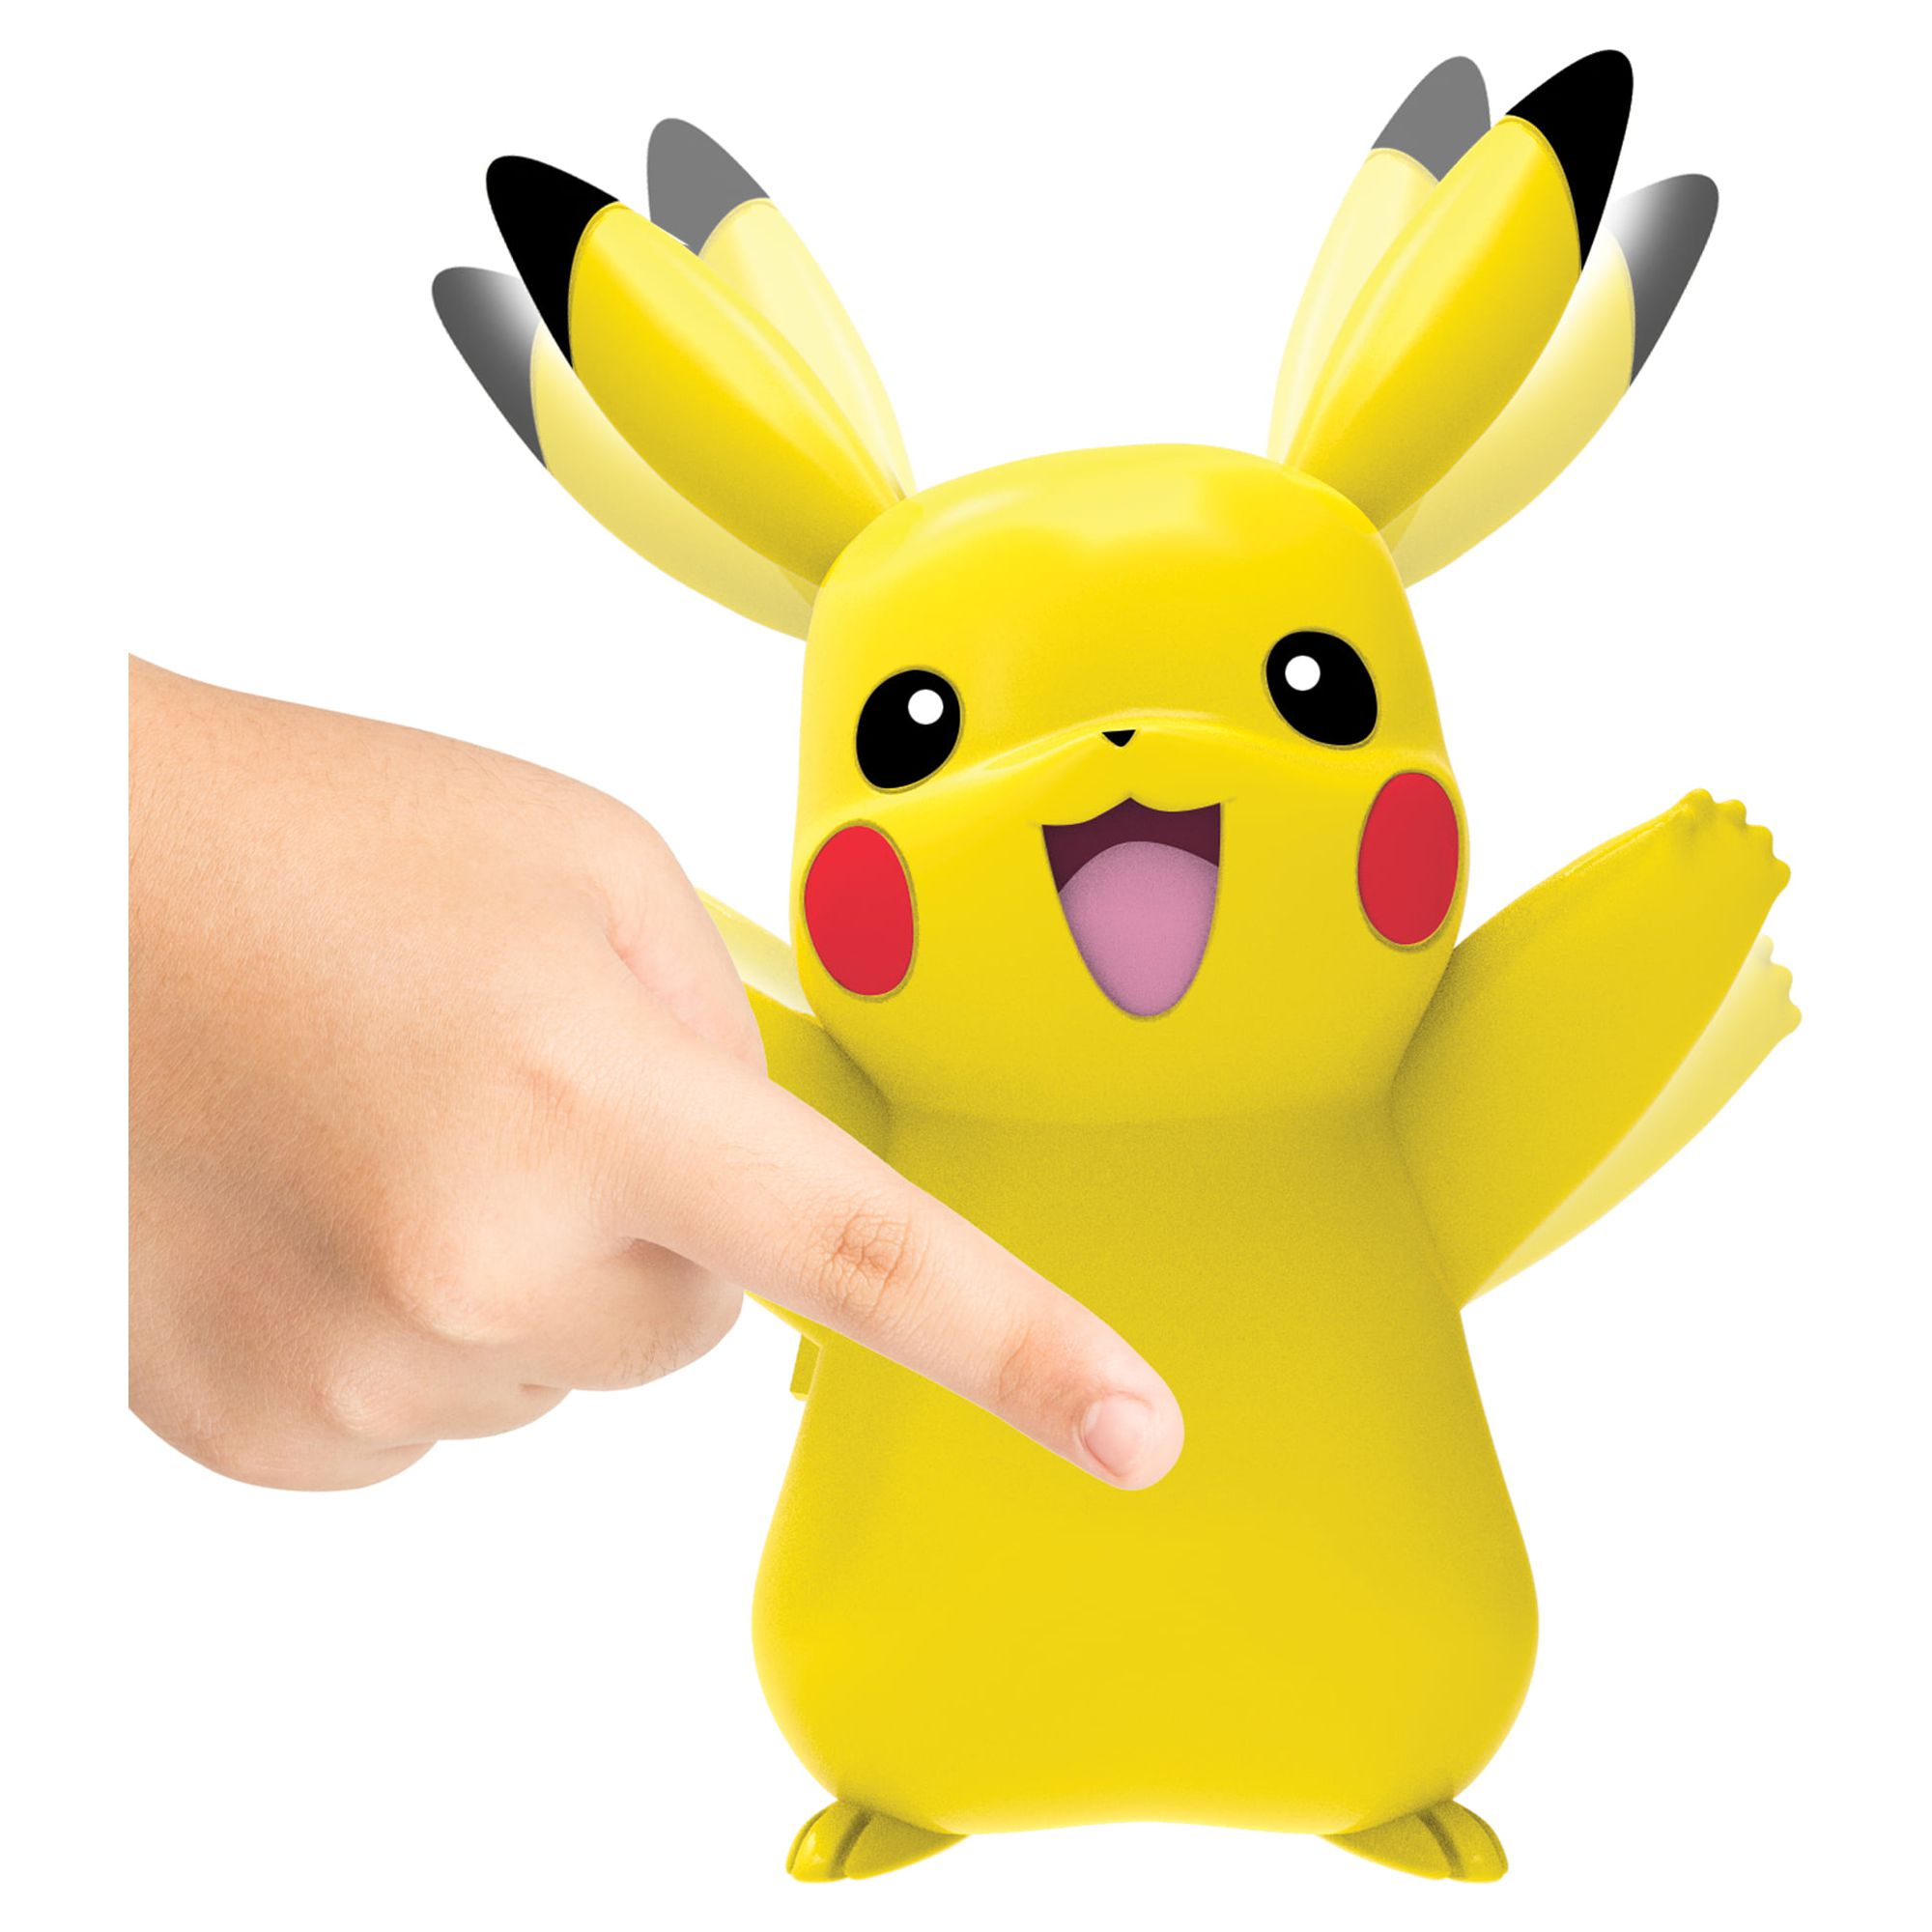 Pokémon My Partner Pikachu Figure - image 6 of 7